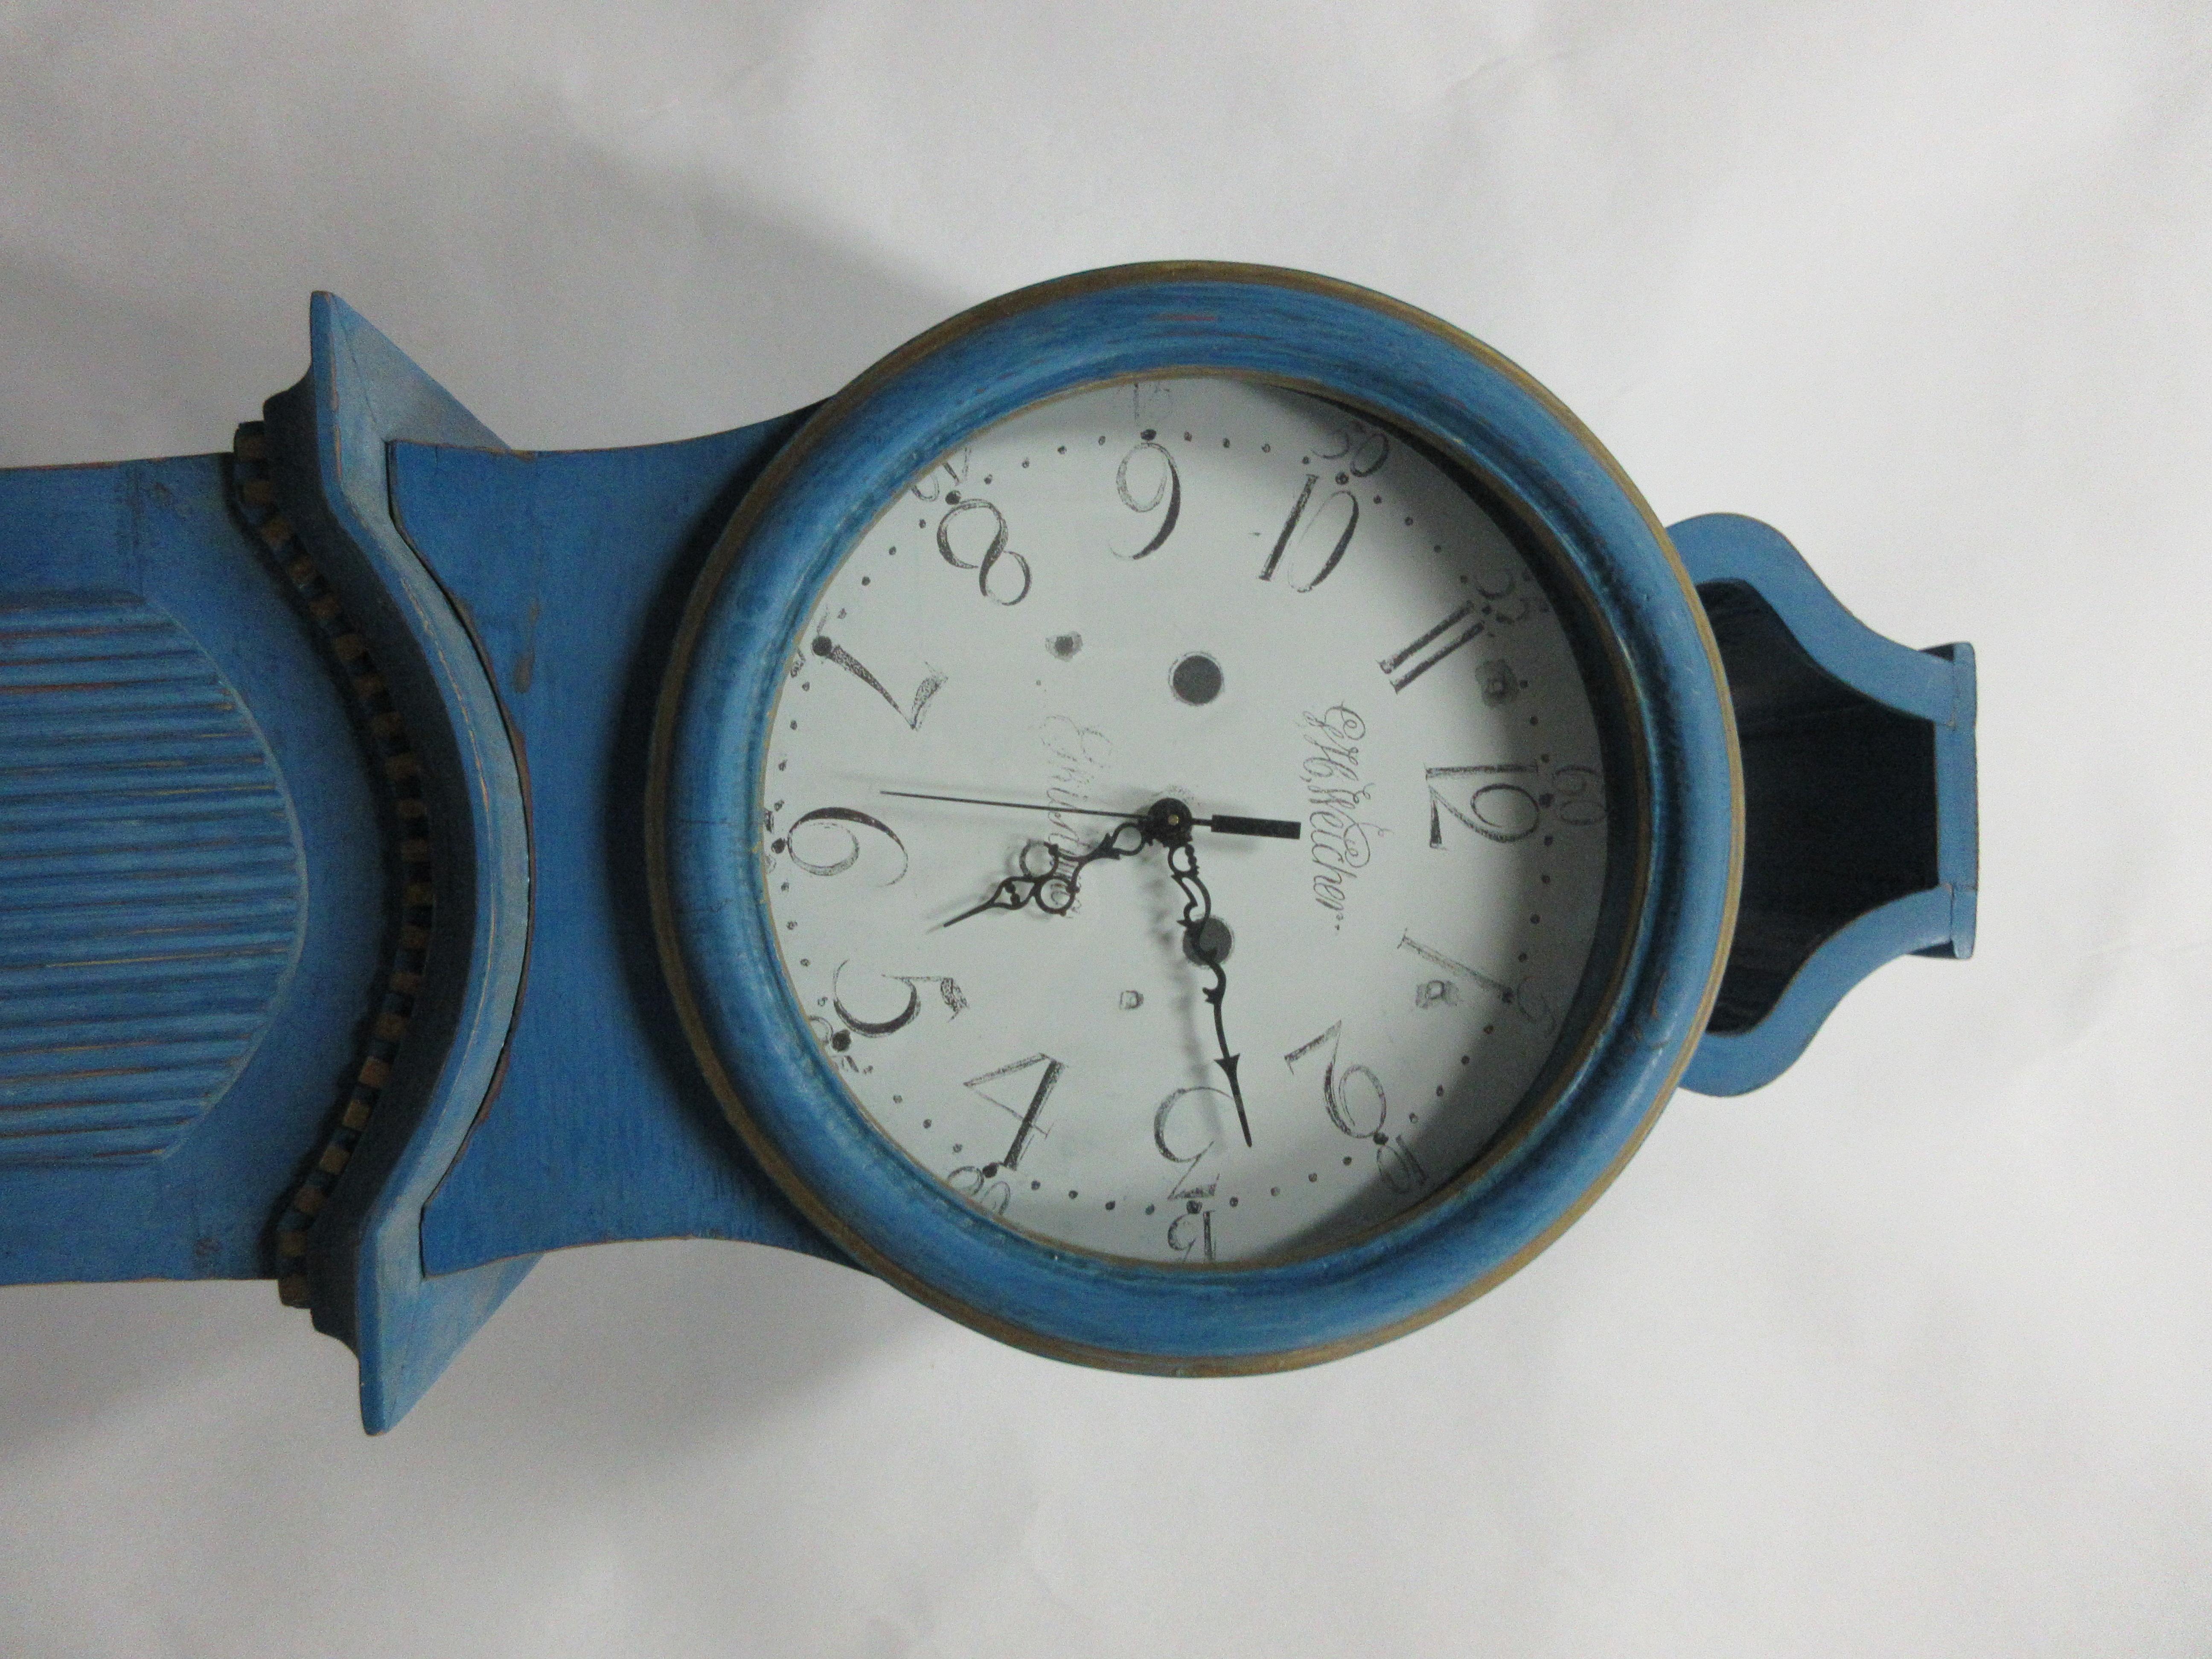 Dies ist eine blaue schwedische Uhr, ist sie original lackiert? Das glaube ich nicht, aber ich denke, es ist eine ältere Farbe.